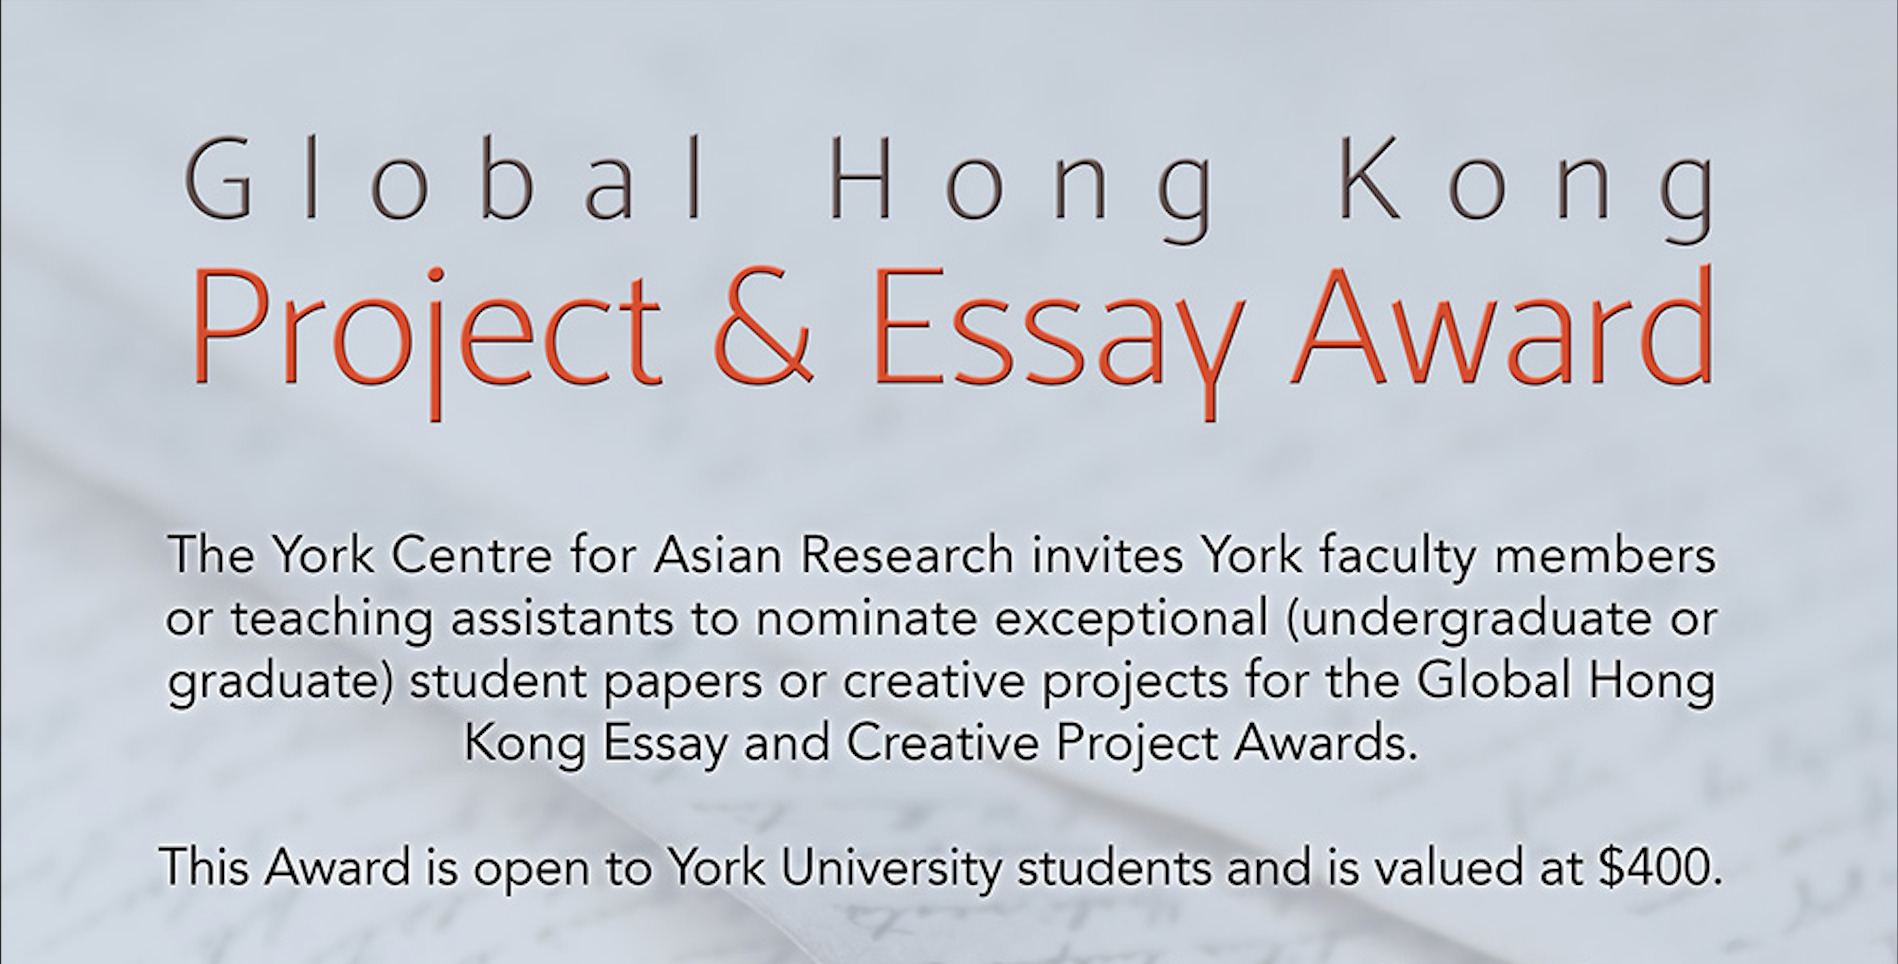 Inaugural recipient of Global Hong Kong Essay and Creative Project Award